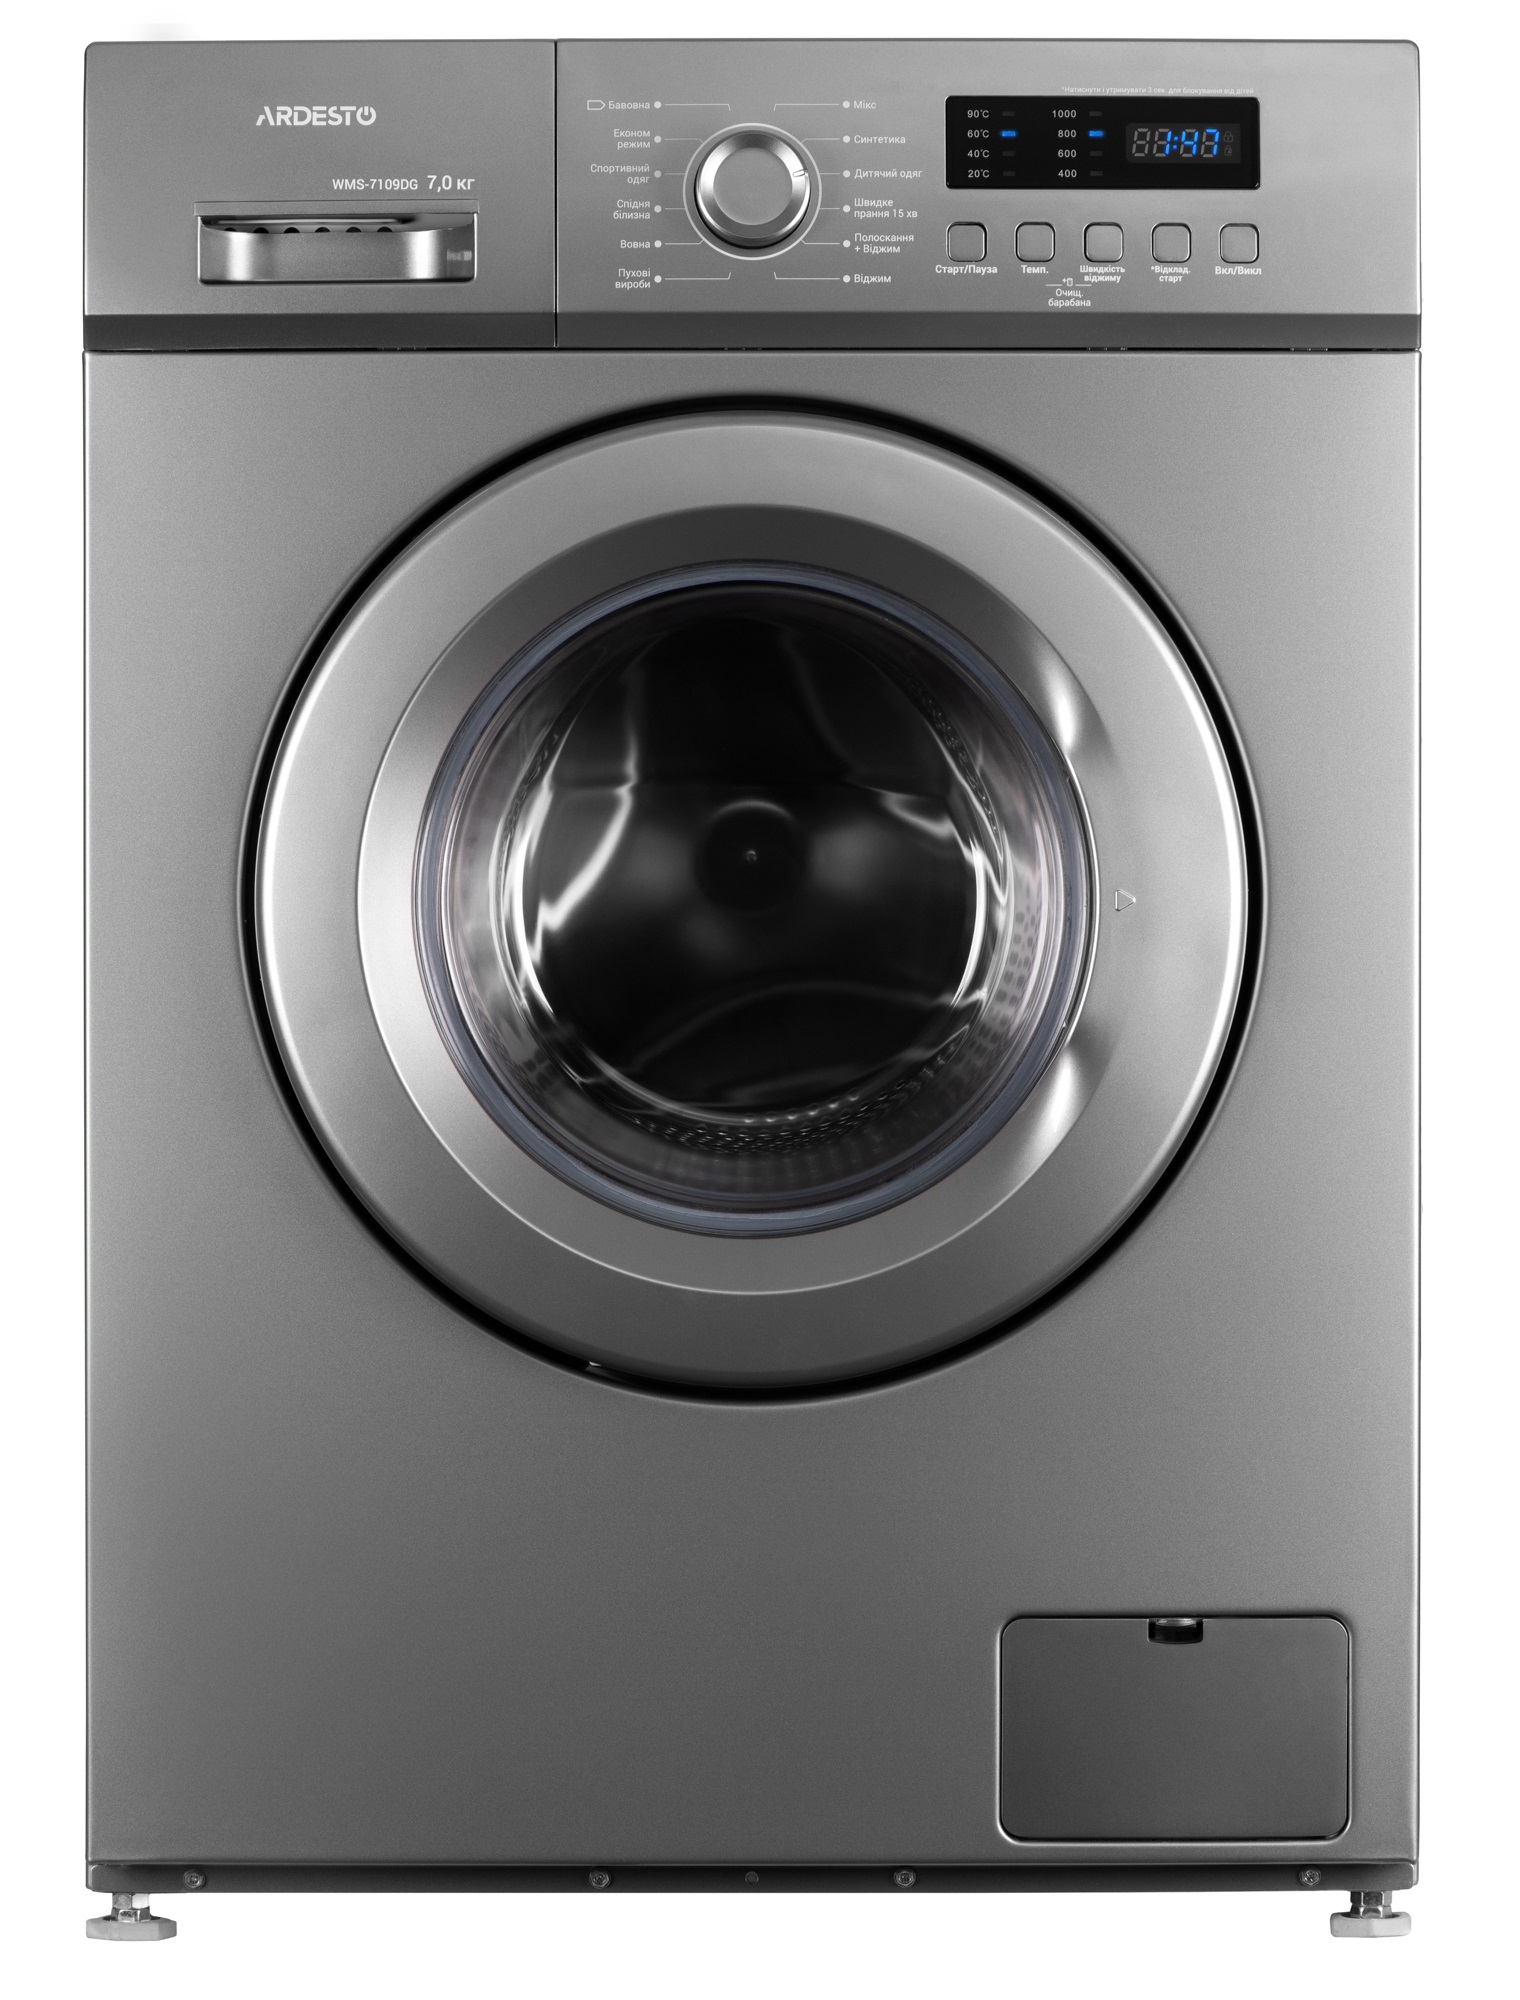 Характеристики стиральная машина Ardesto WMS-7109DG